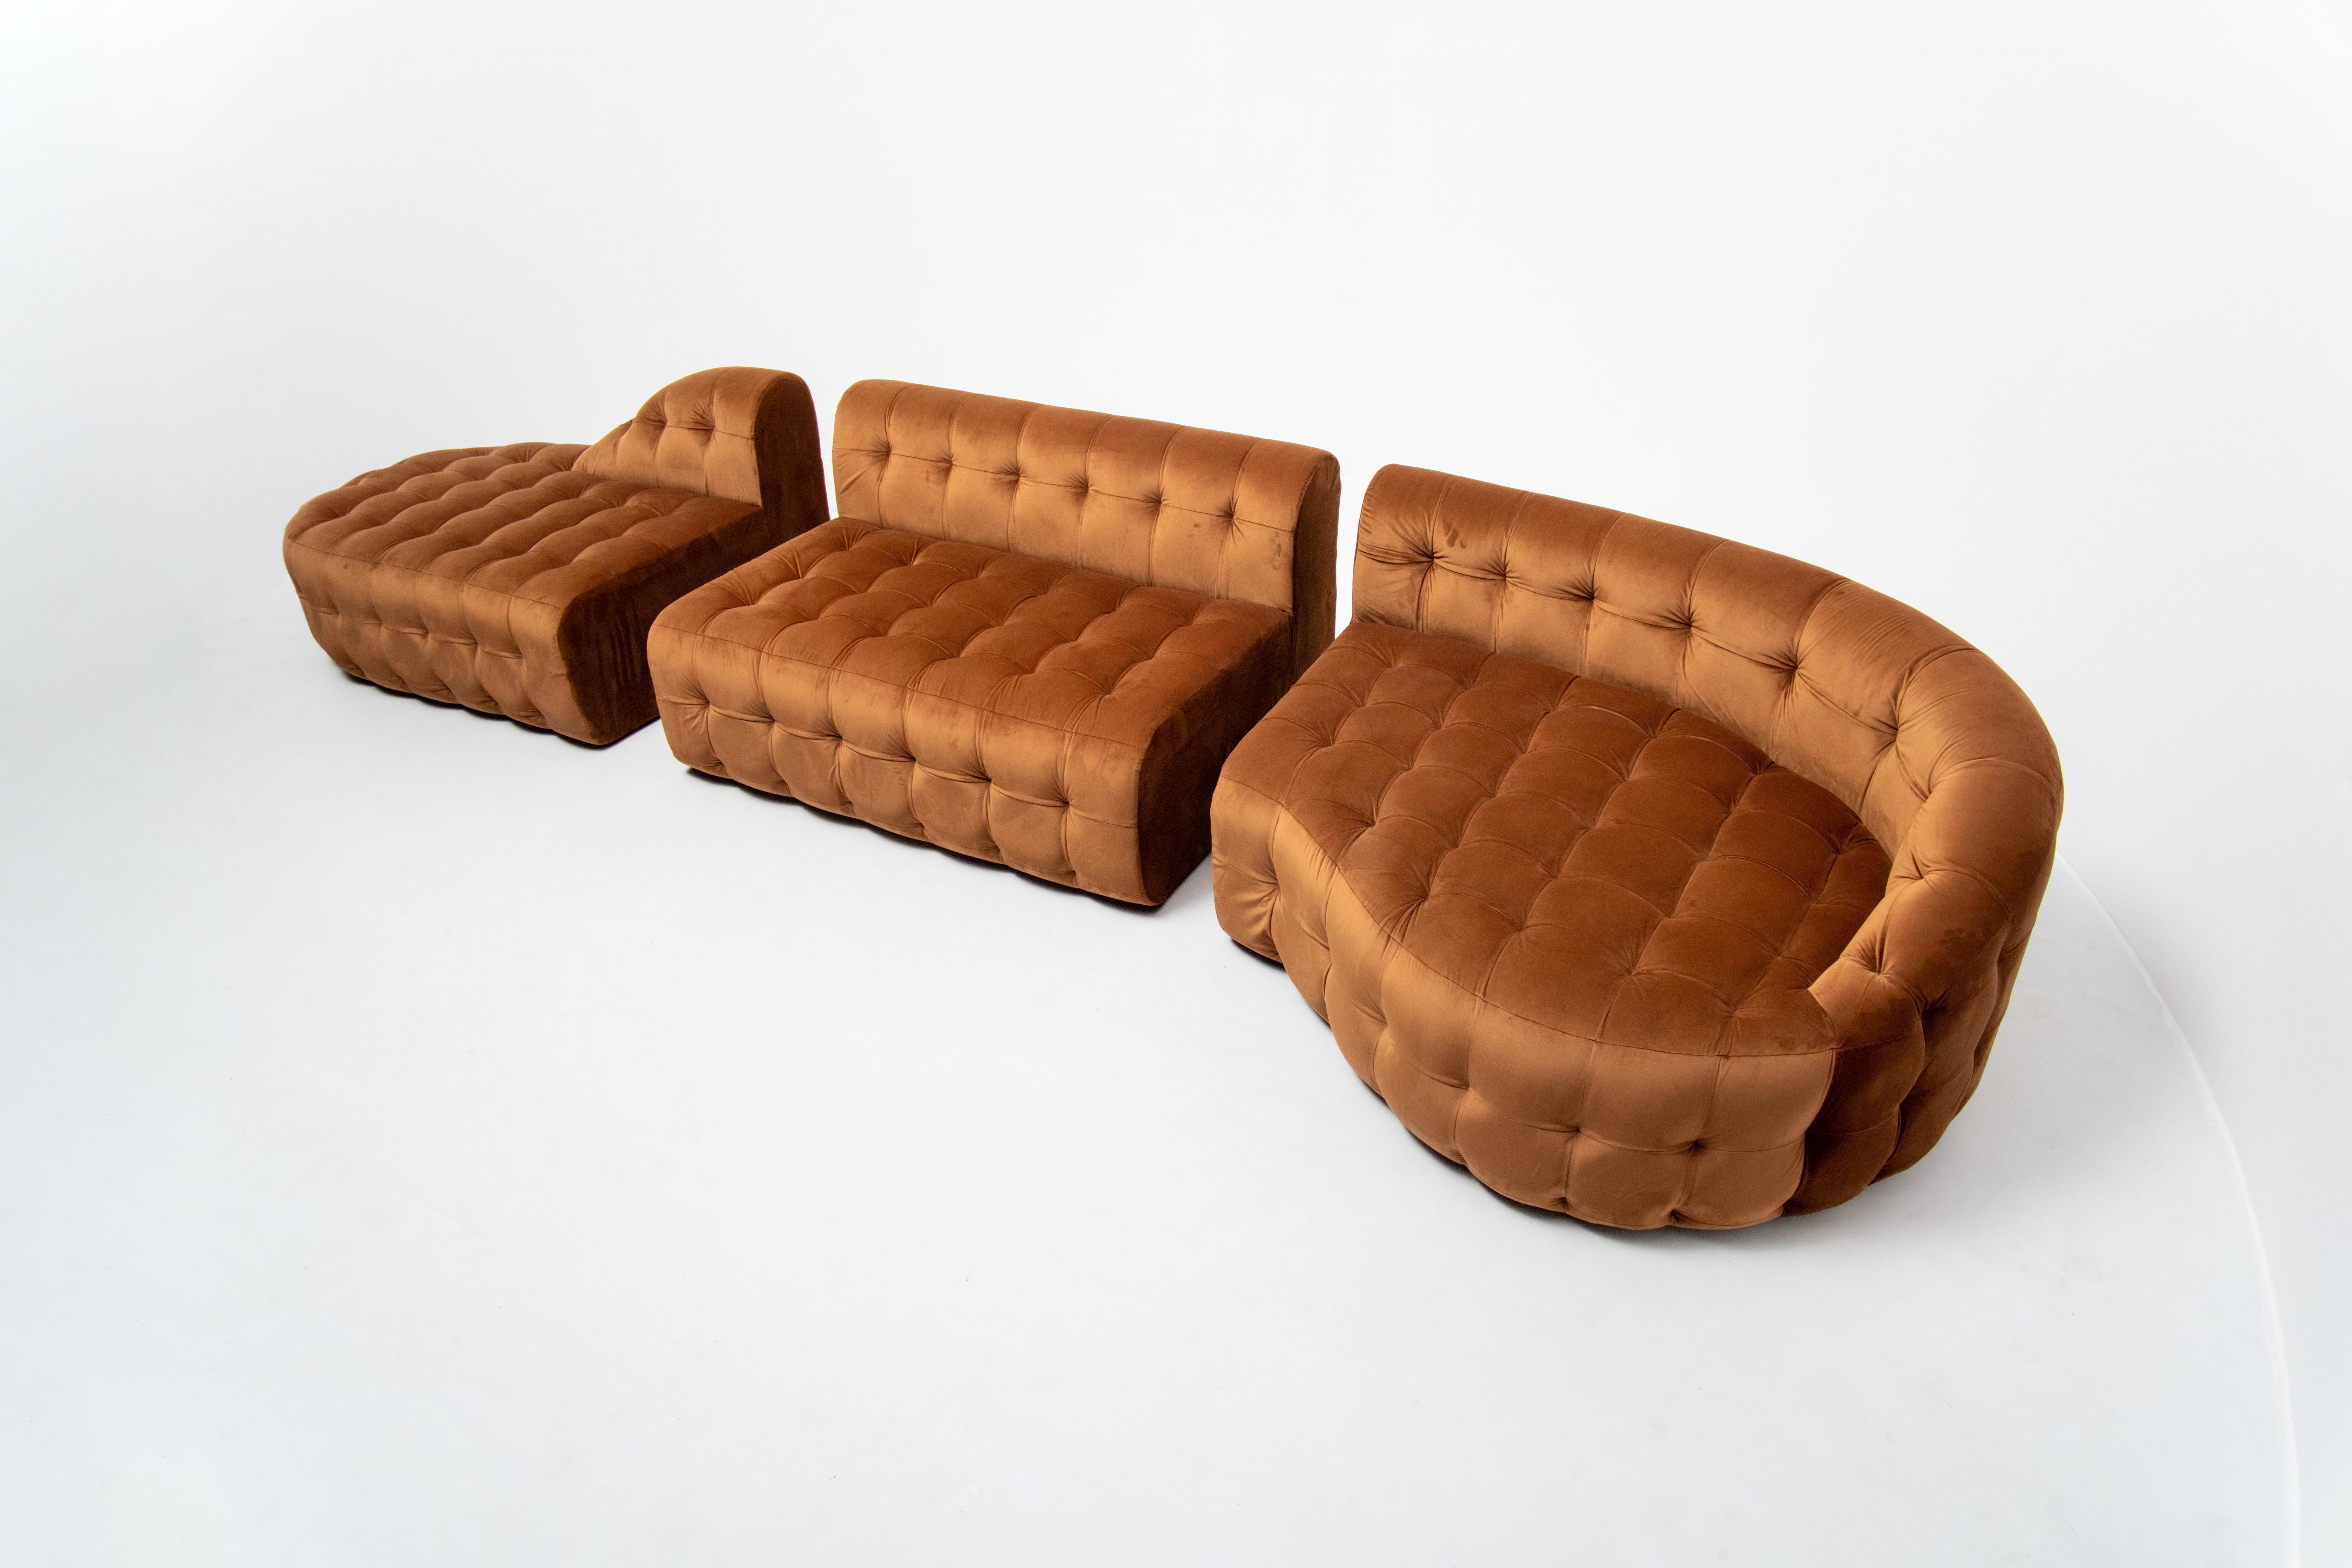 Le canapé Serenity Tan, un canapé modulaire touffeté avec les modules 6A, 5 et 2B, ajoute du glamour aux espaces intérieurs. Il présente une polyvalence unique de forme et de taille, mise en valeur par un riche velours. Chaque module peut être vendu